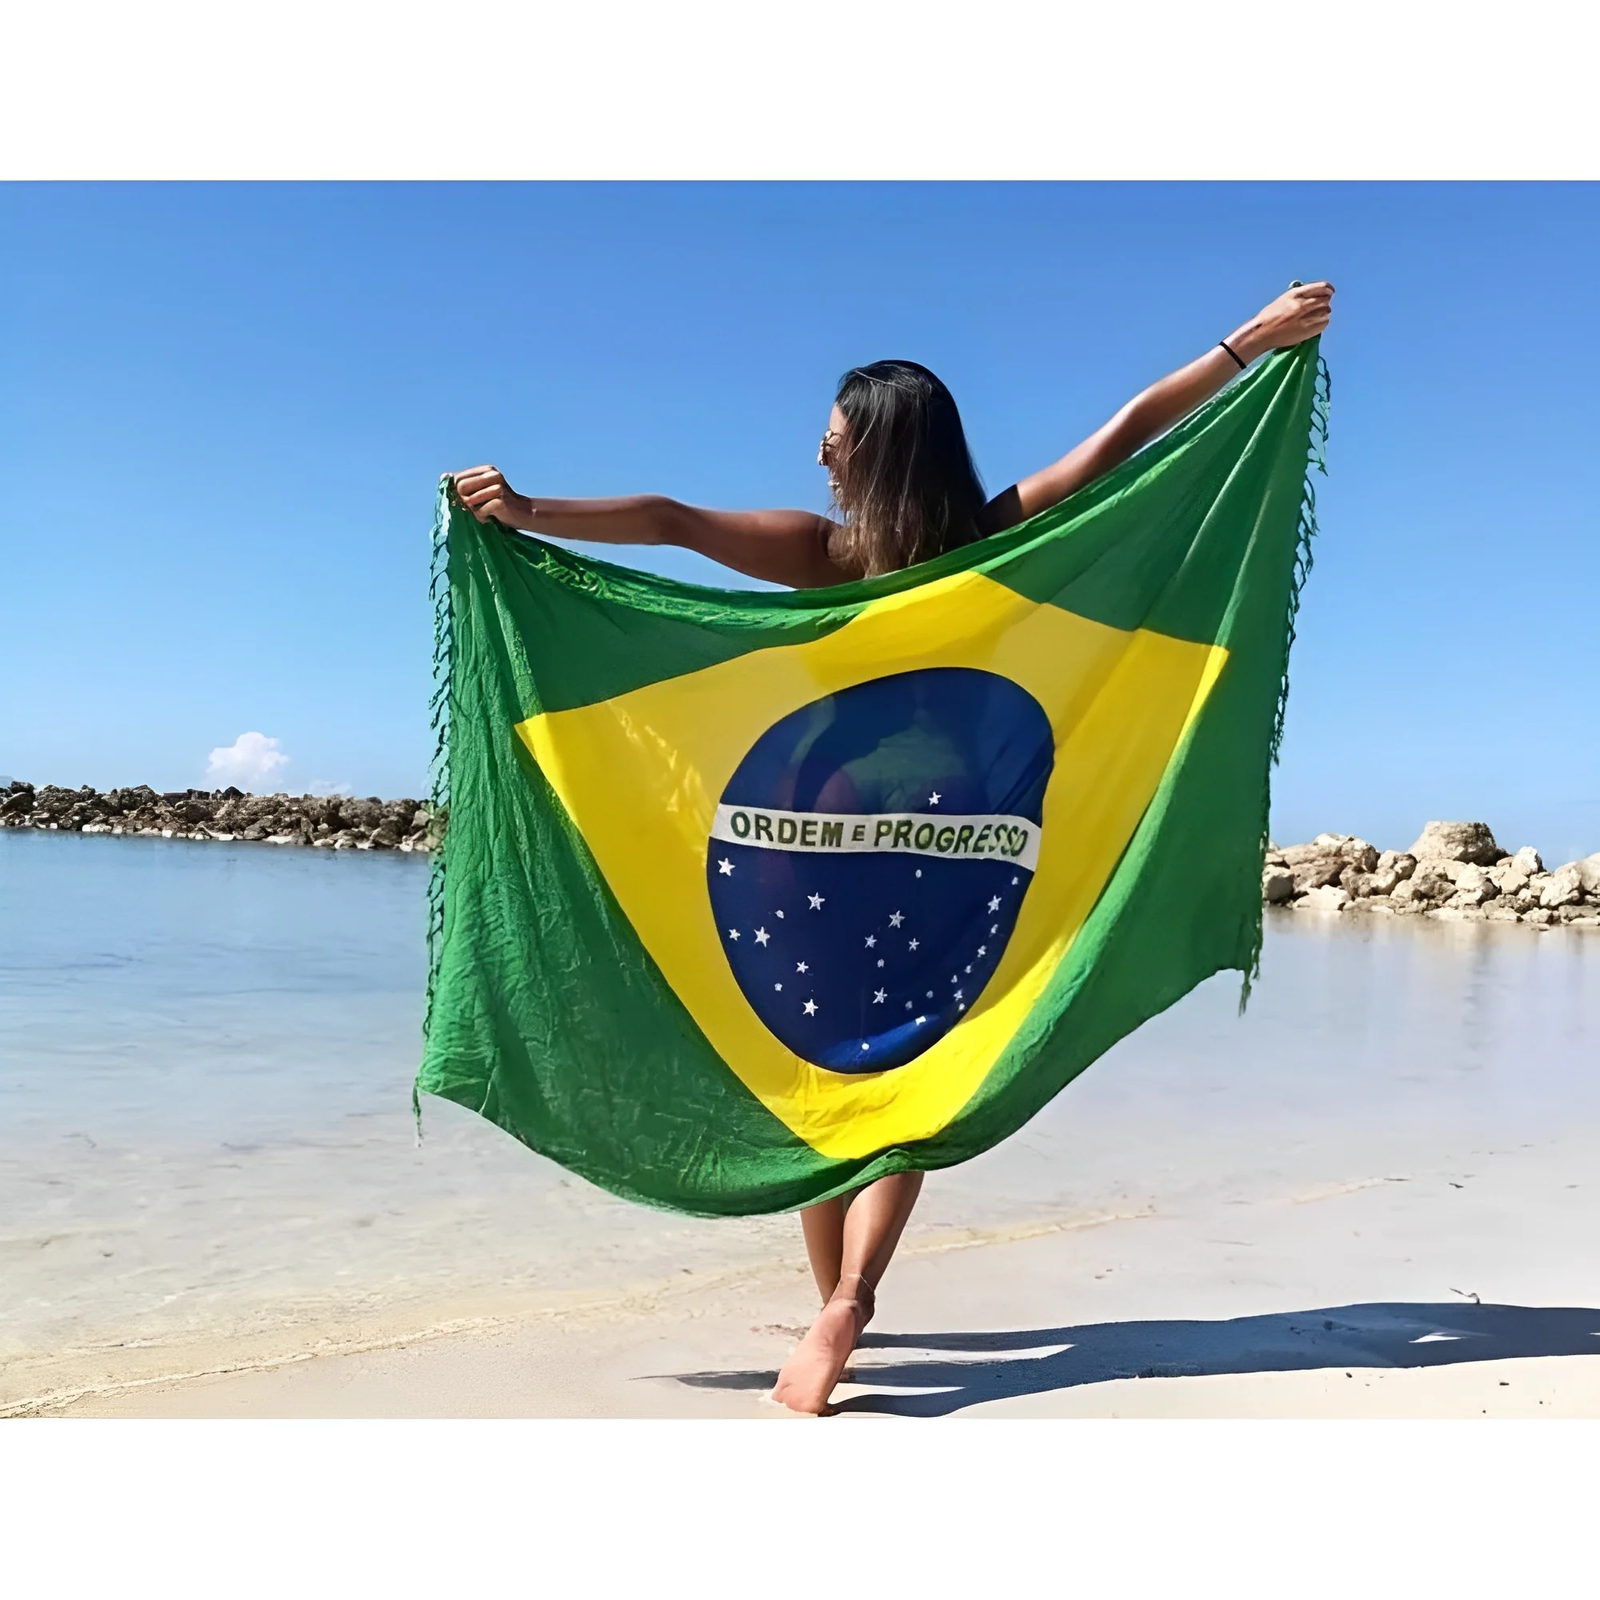 BANDERA BRASILEÑA CANGA - Verde, Amarillo, Azul Y Blanco - Toalla de Playa Brasileña (Pareo/Pareo)